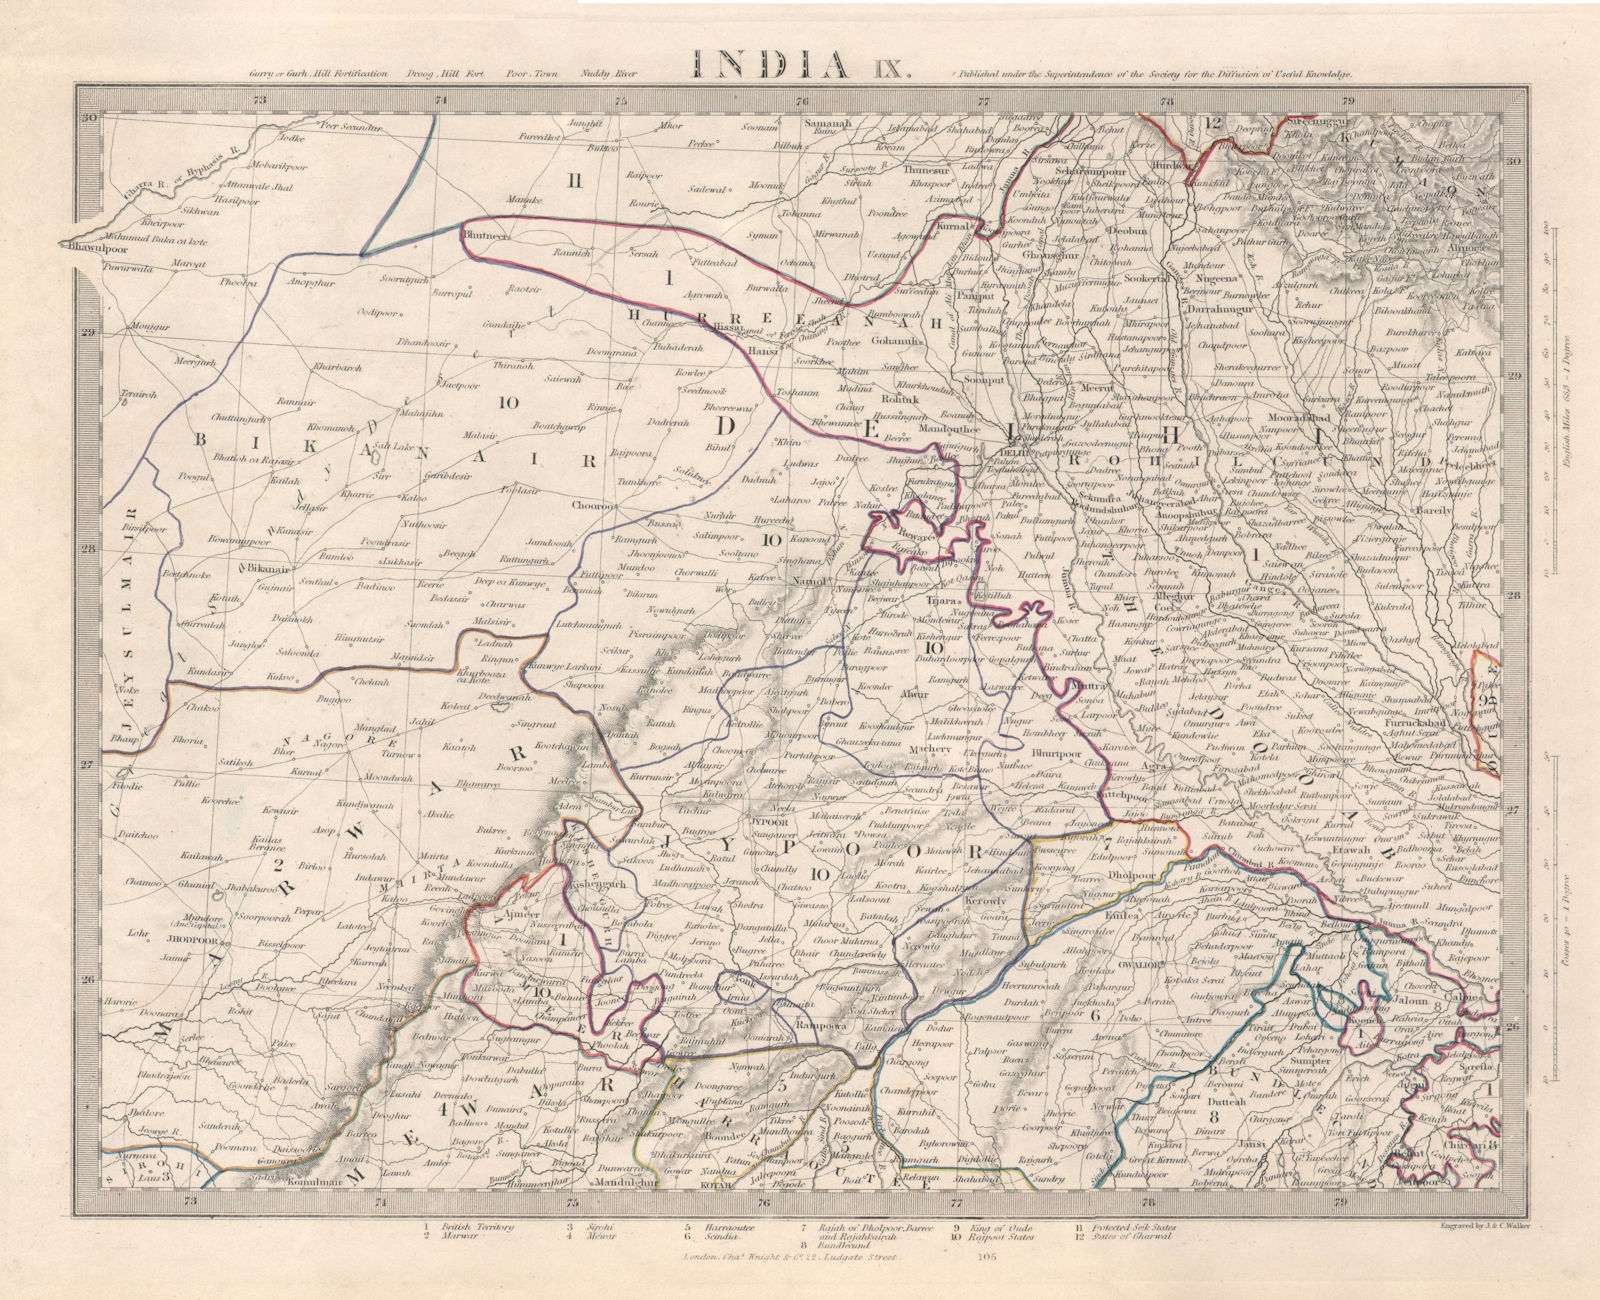 INDIA IX. RAJASTHAN Delhi Jaipur Marwar Mewar Bikaner Bundelkhand. SDUK 1846 map